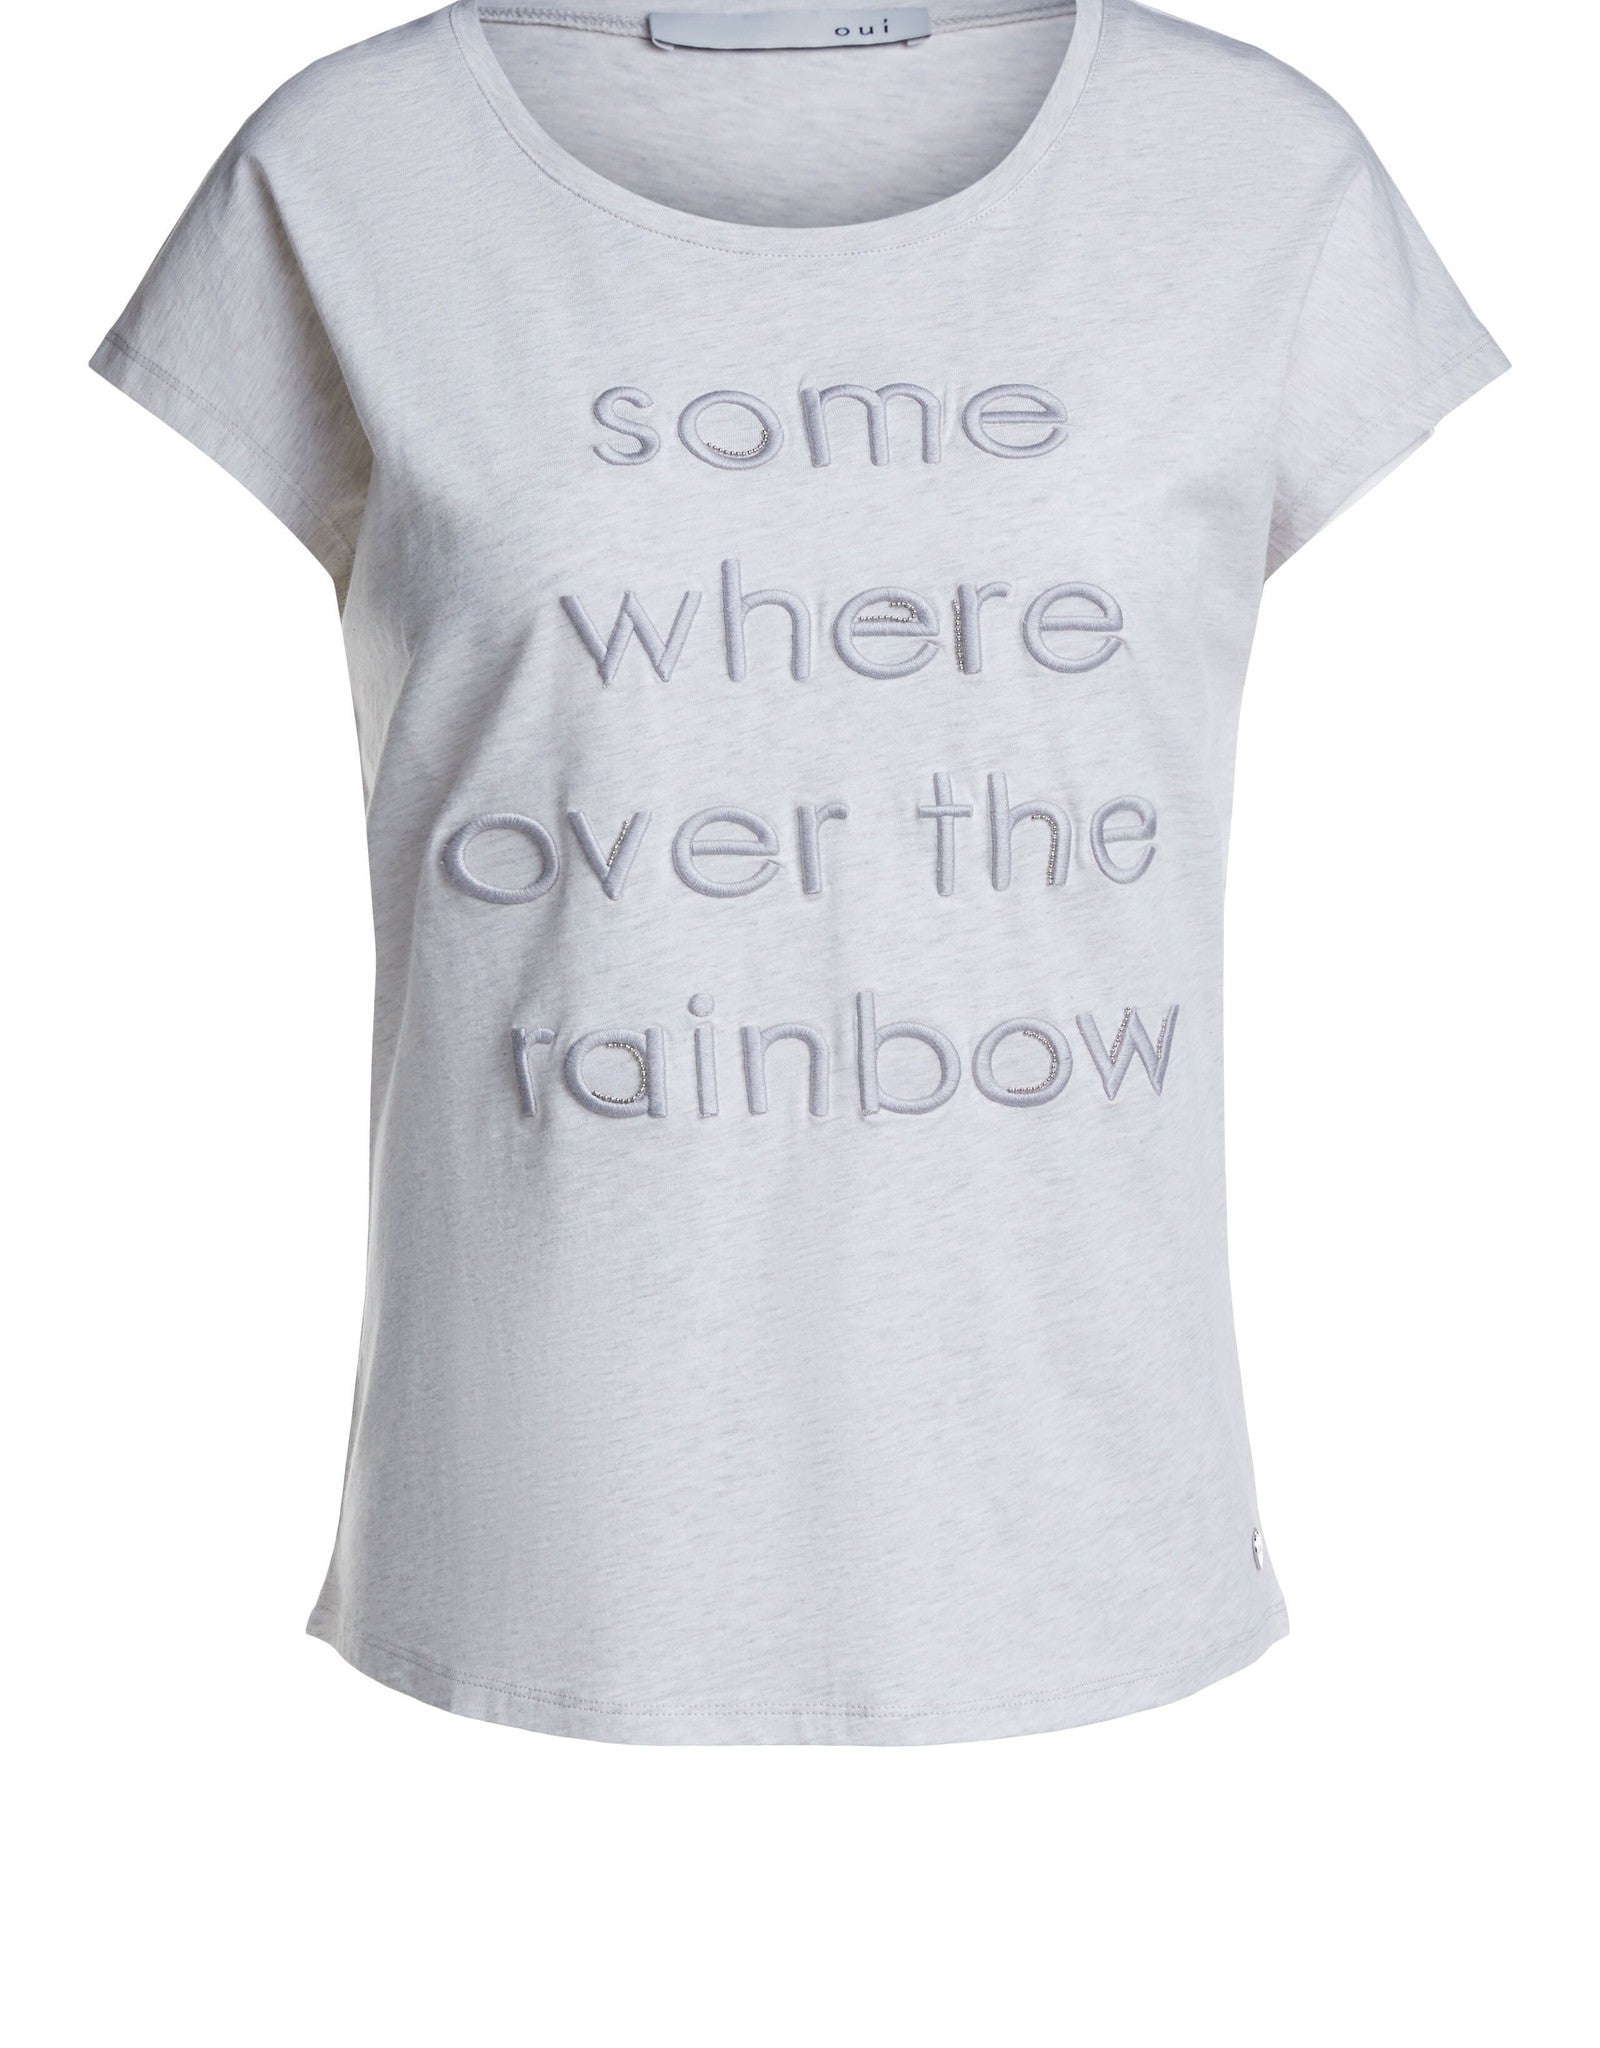 Over The Rainbow Tee Shirt